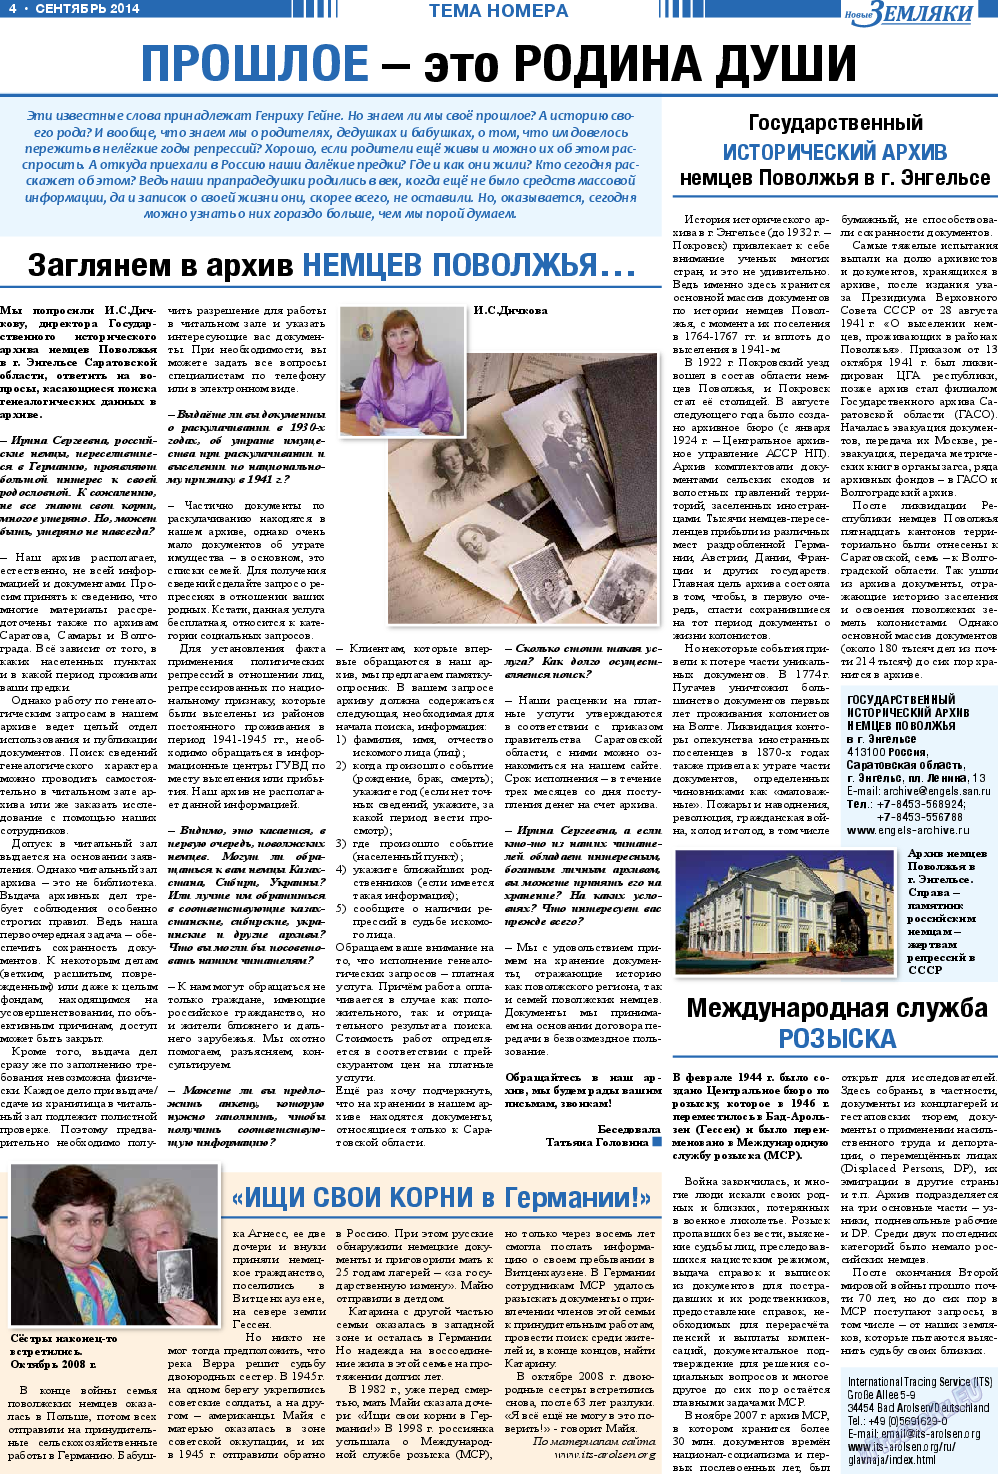 Новые Земляки (газета). 2014 год, номер 9, стр. 4